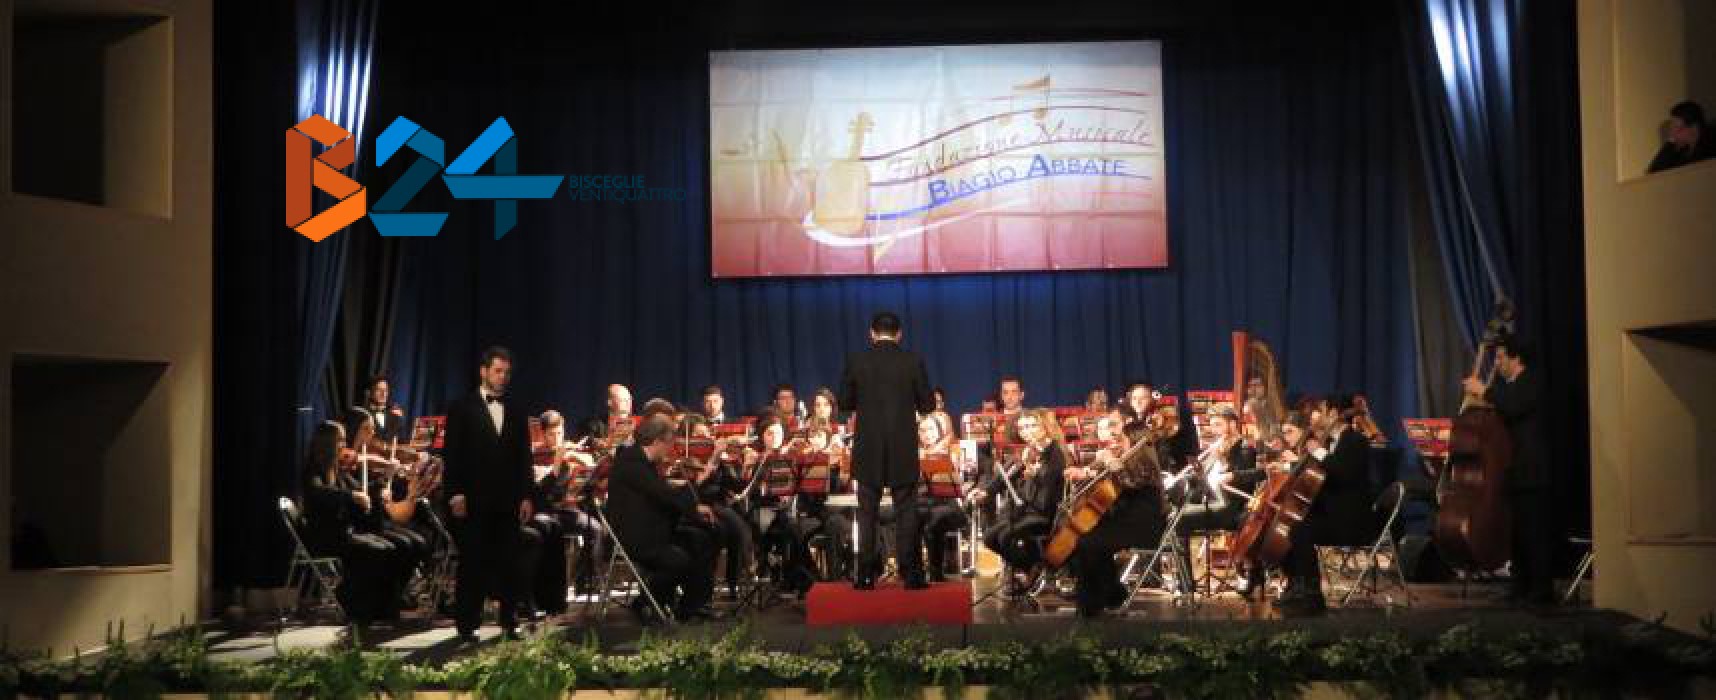 Concerto d’Inverno, l’Orchestra Biagio Abbate coinvolge ed emoziona il pubblico del Politeama / FOTO